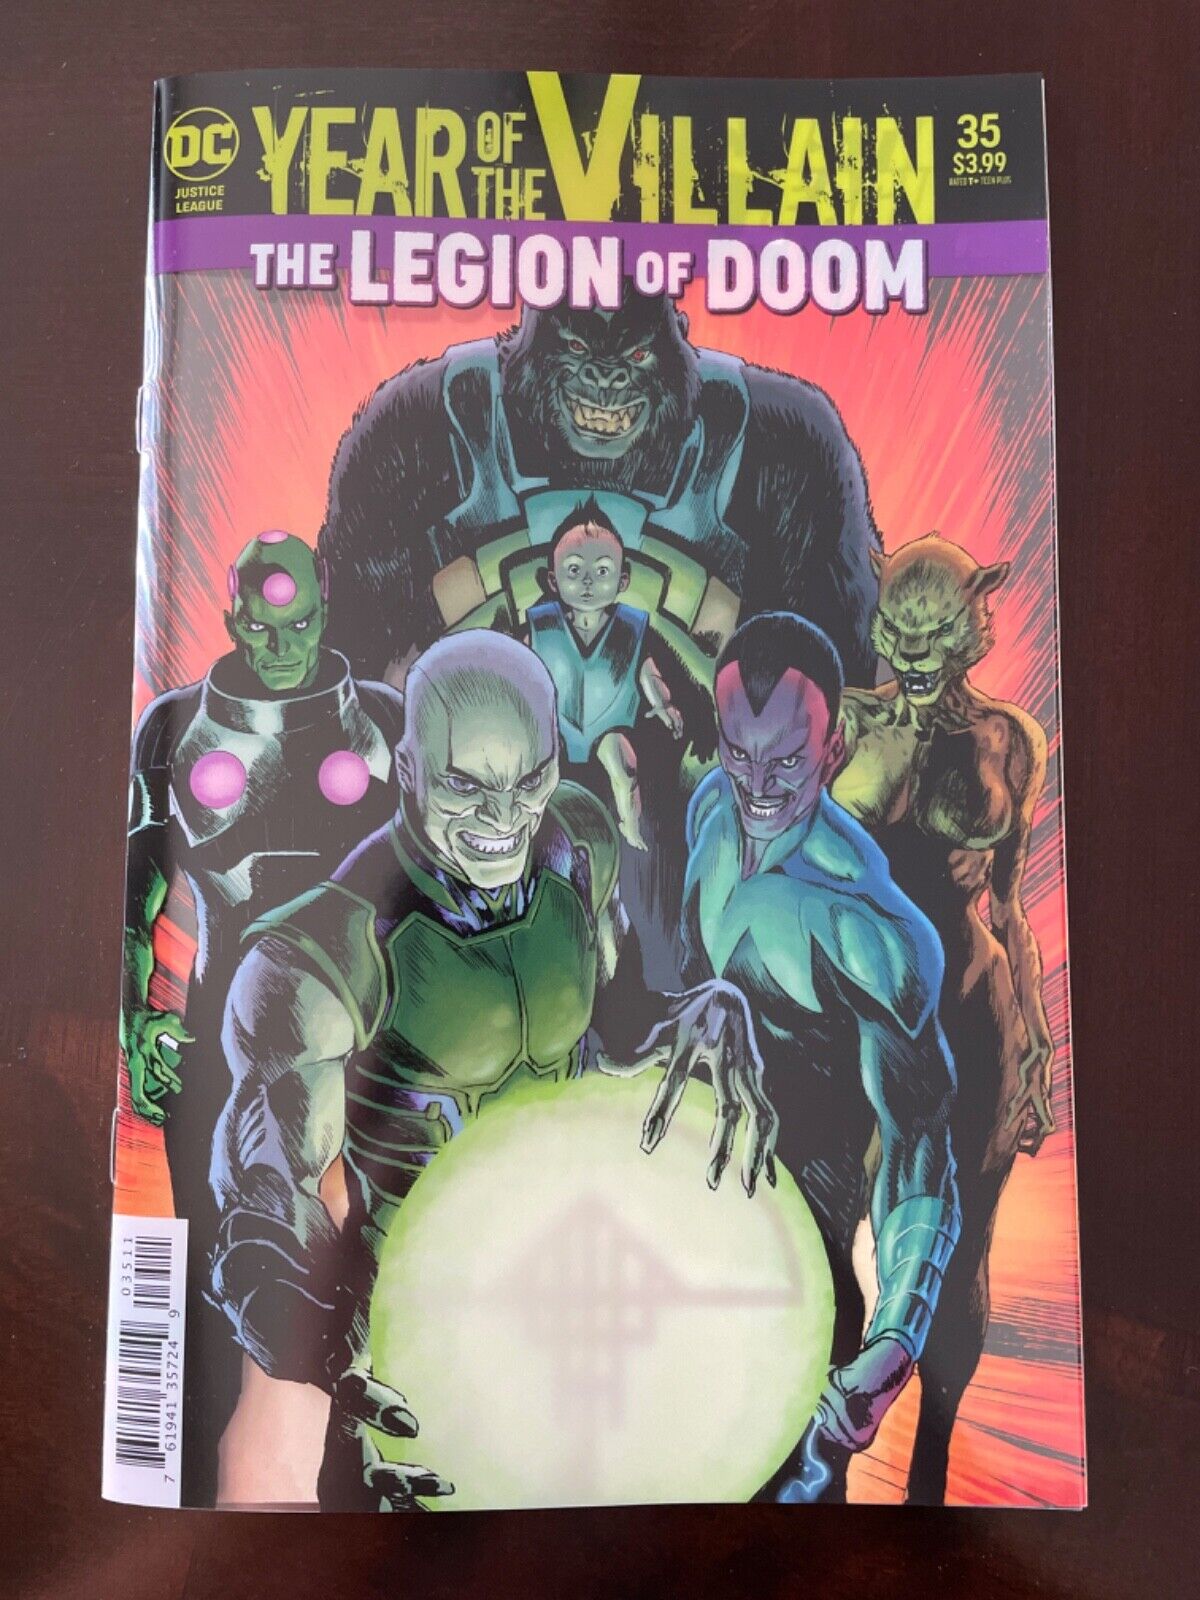 Justice League #35 Vol. 4 (DC, 2020) Rafael Albuquerque Acetate Cover, NM-